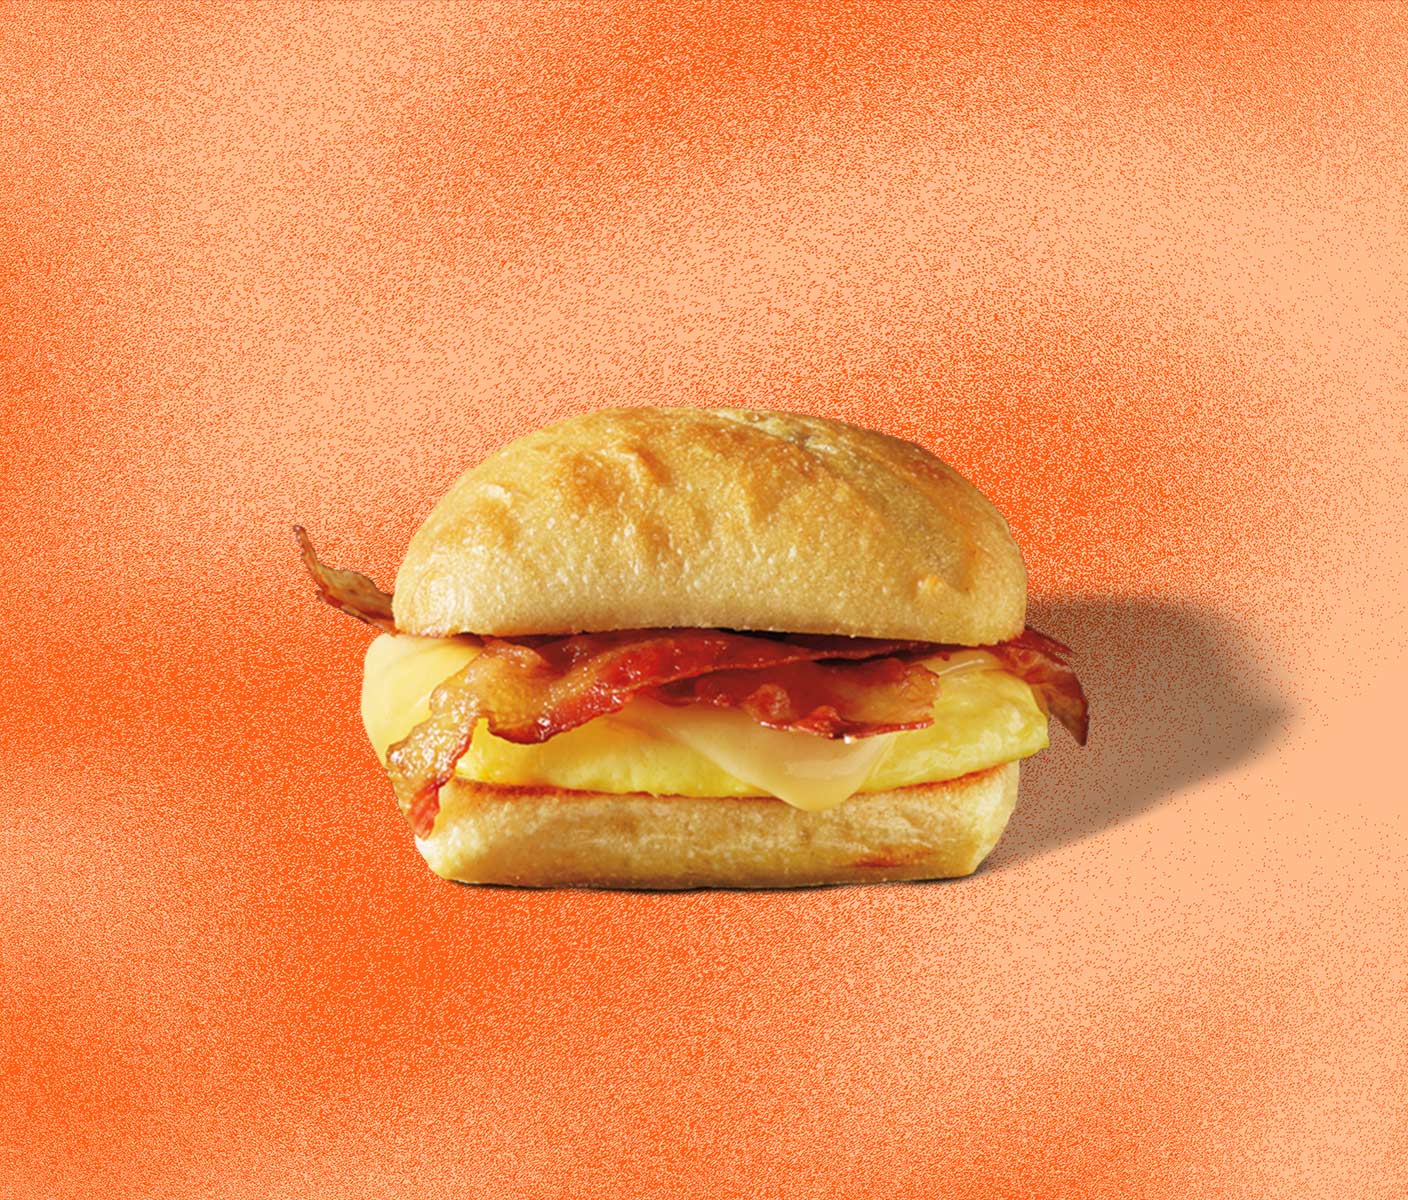 Vue latérale d’un sandwich garni d’œufs, de bacon et de fromage dans un pain moelleux.